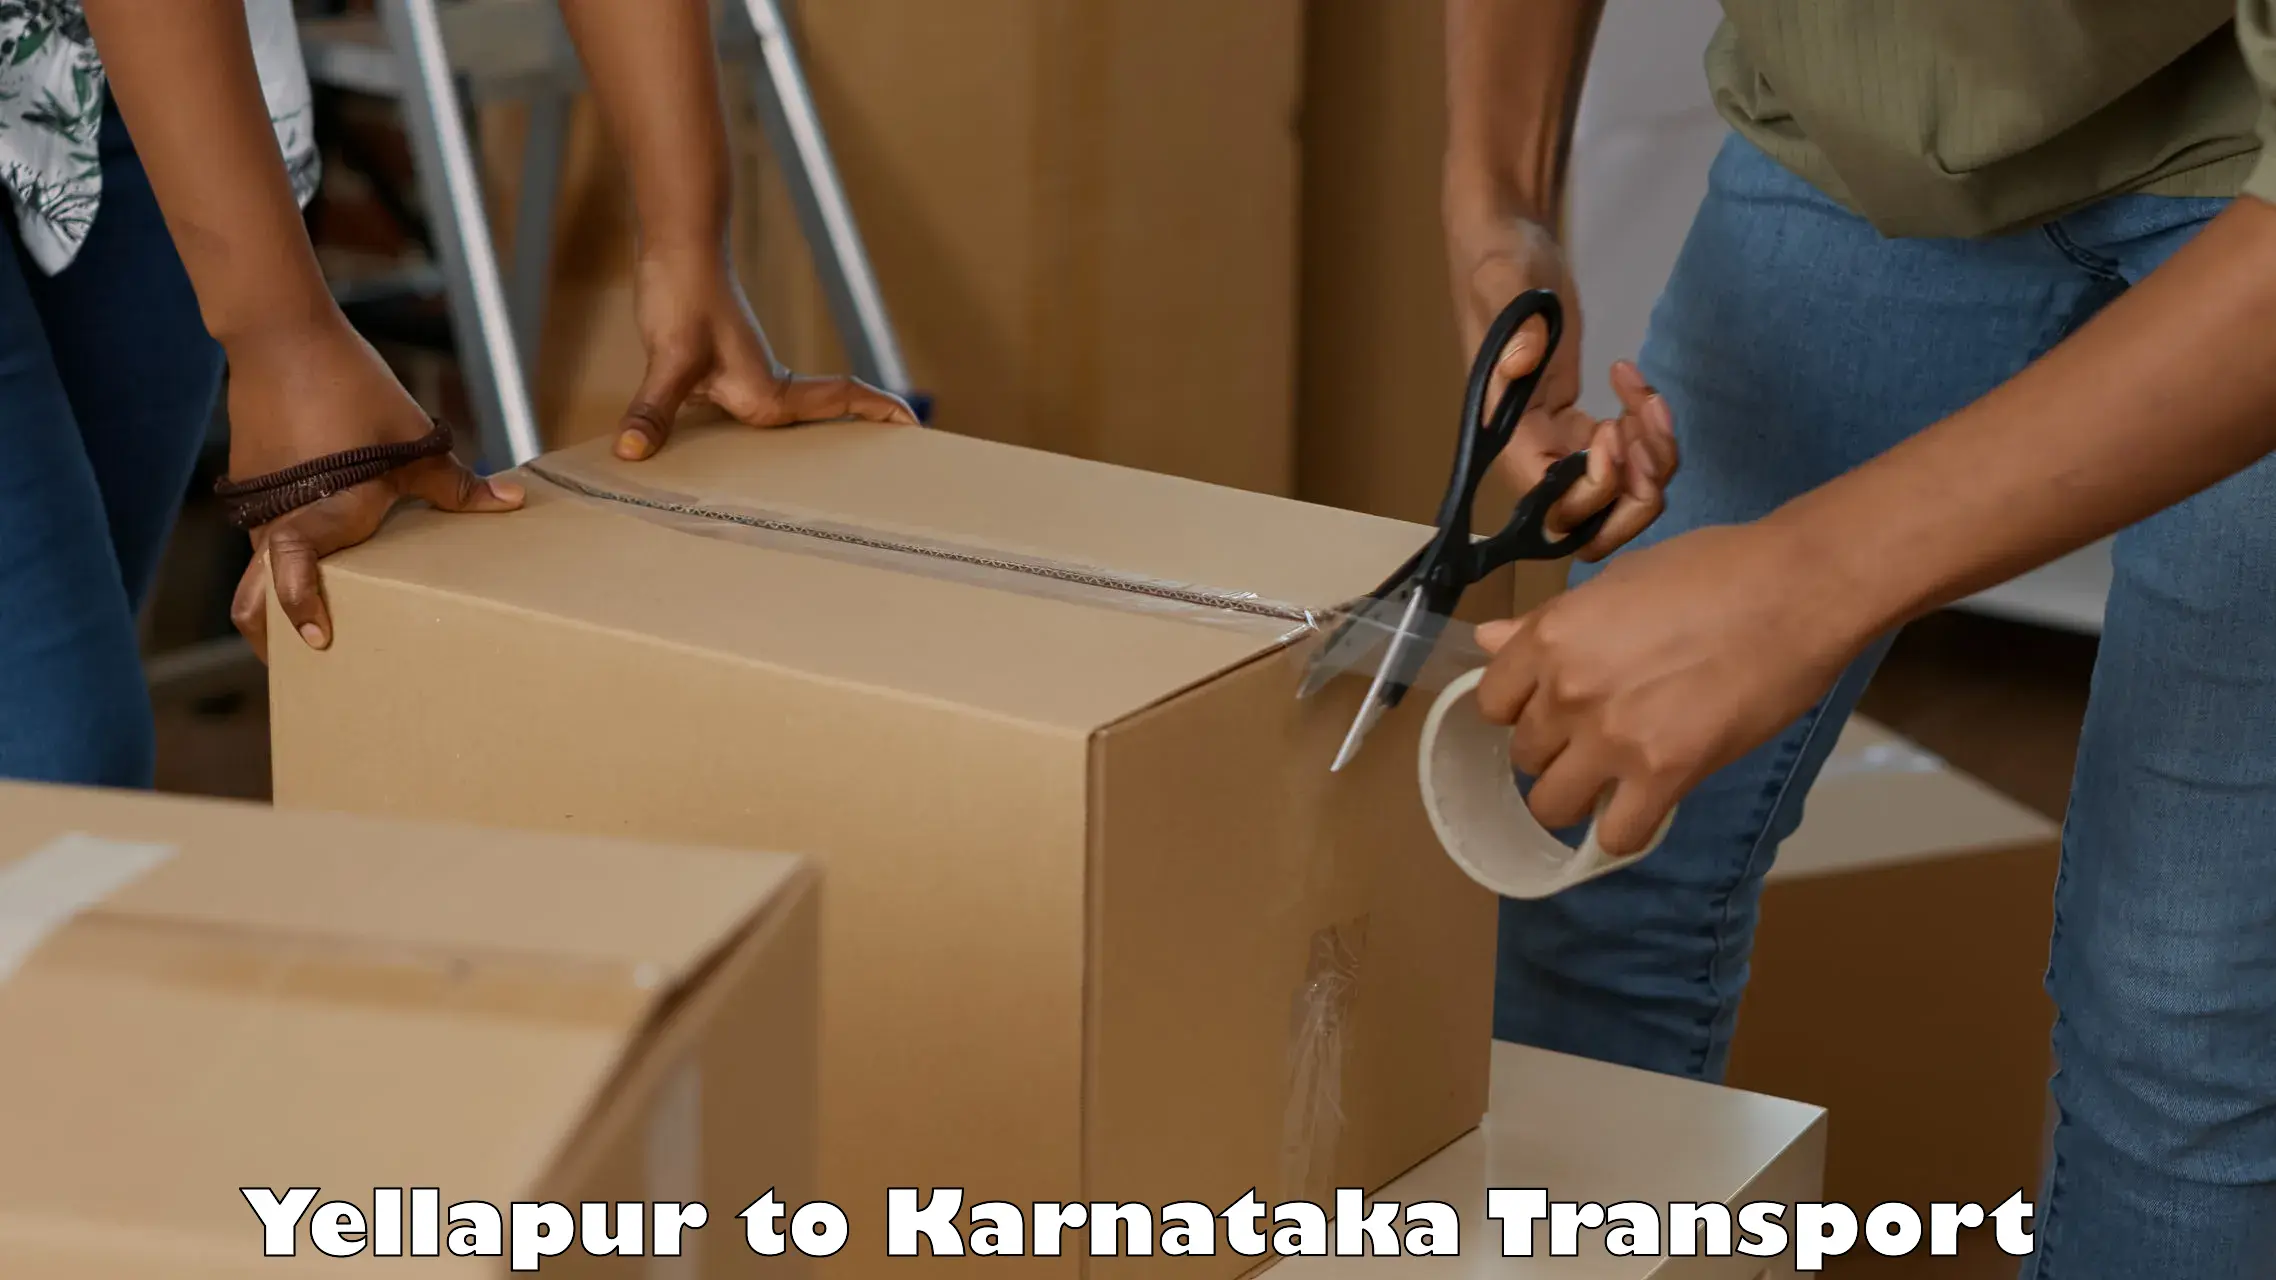 India truck logistics services Yellapur to Munavalli